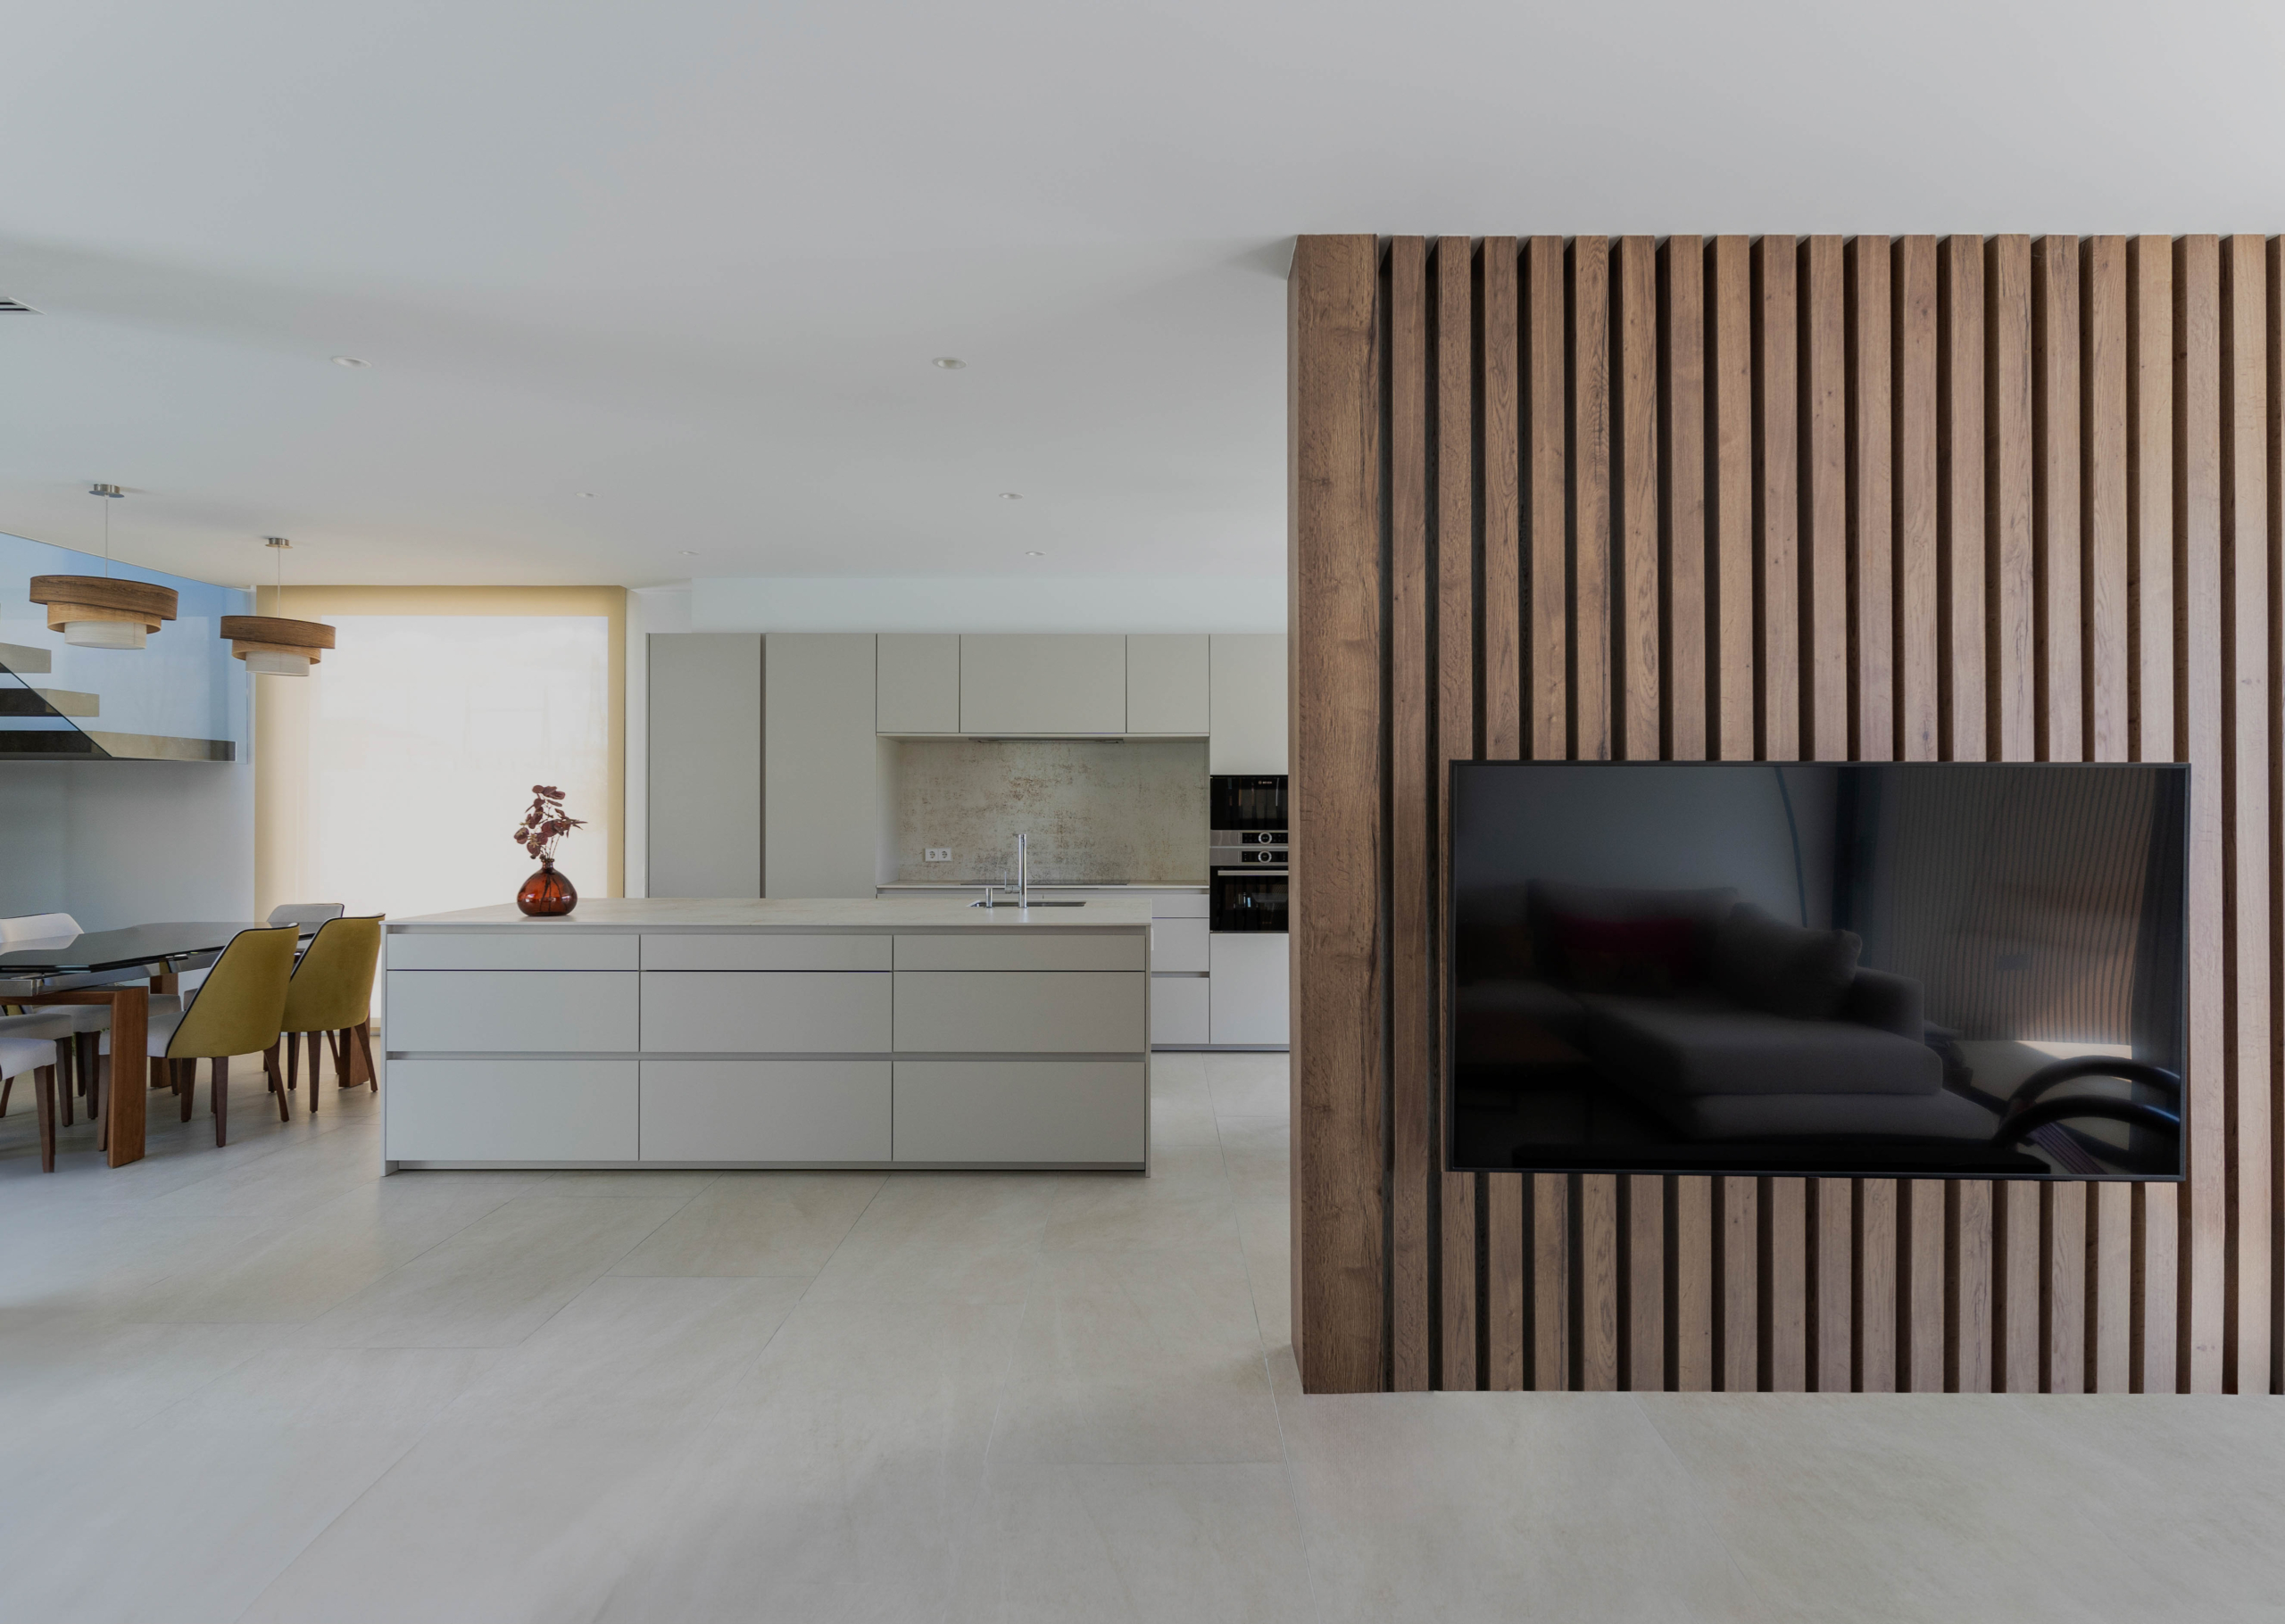 Salón y cocina con muro divisor de madera tecnológica en casa prefabricada